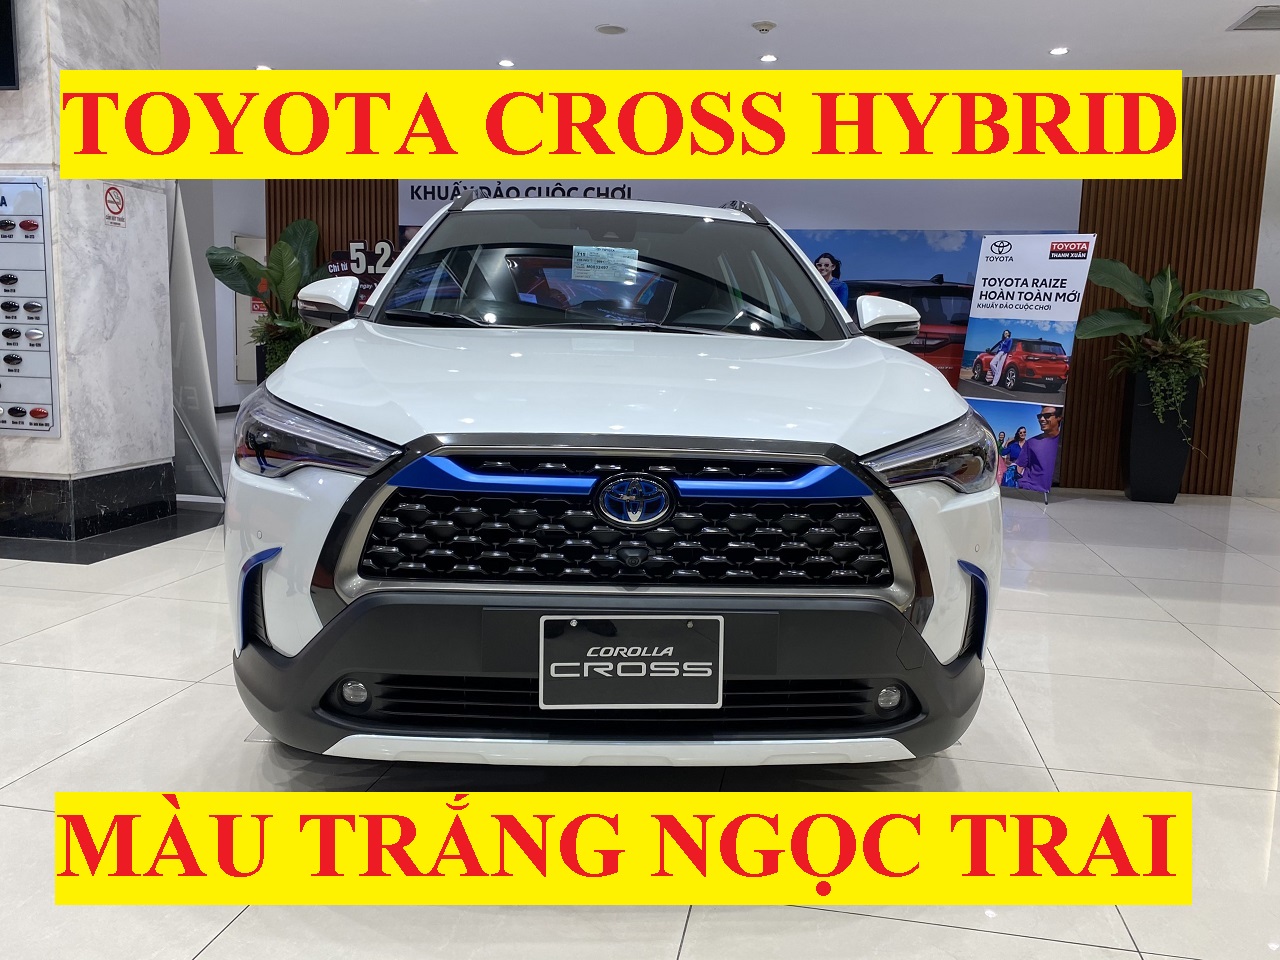 Toyota Corolla Cross 1.8 Hybrid Màu Trắng Ngọc Trai Hình ảnh Bảng Giá Xe Lăn Bánh Mới Nhất 2022